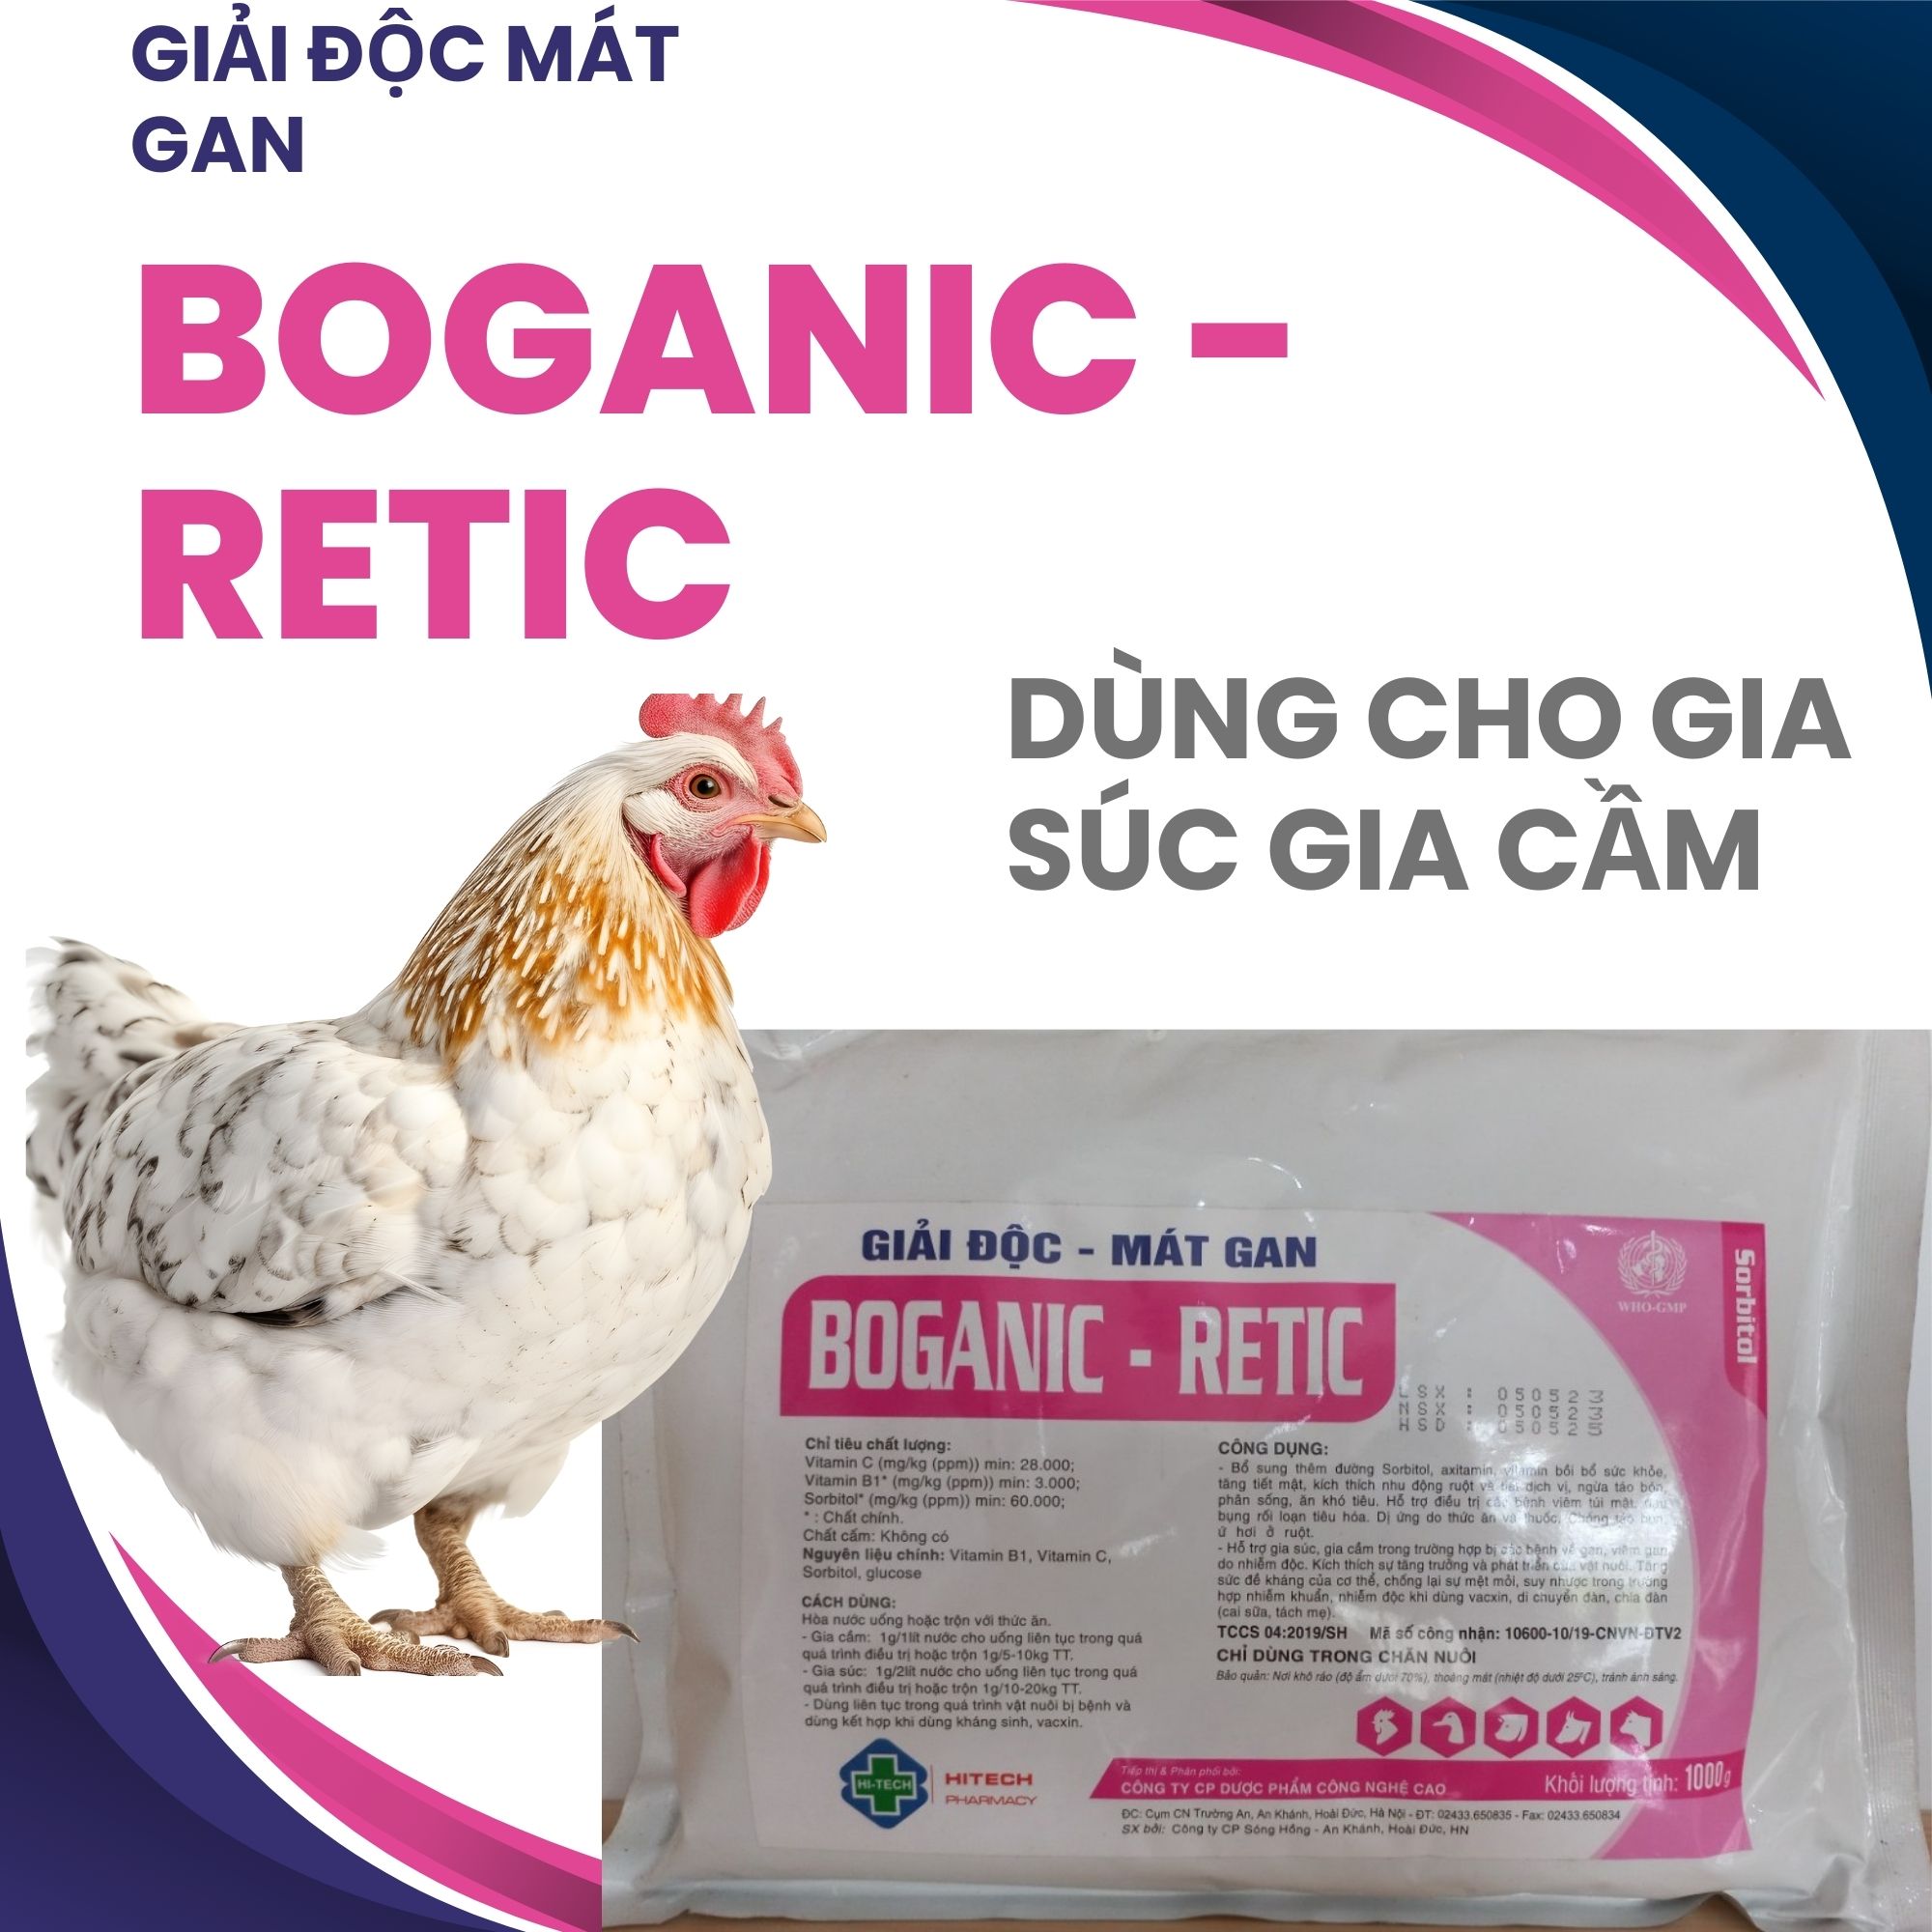 Boganic - Retic giải độc mát gan dành cho gà vịt, heo, bò,tăng cường chức năng gan